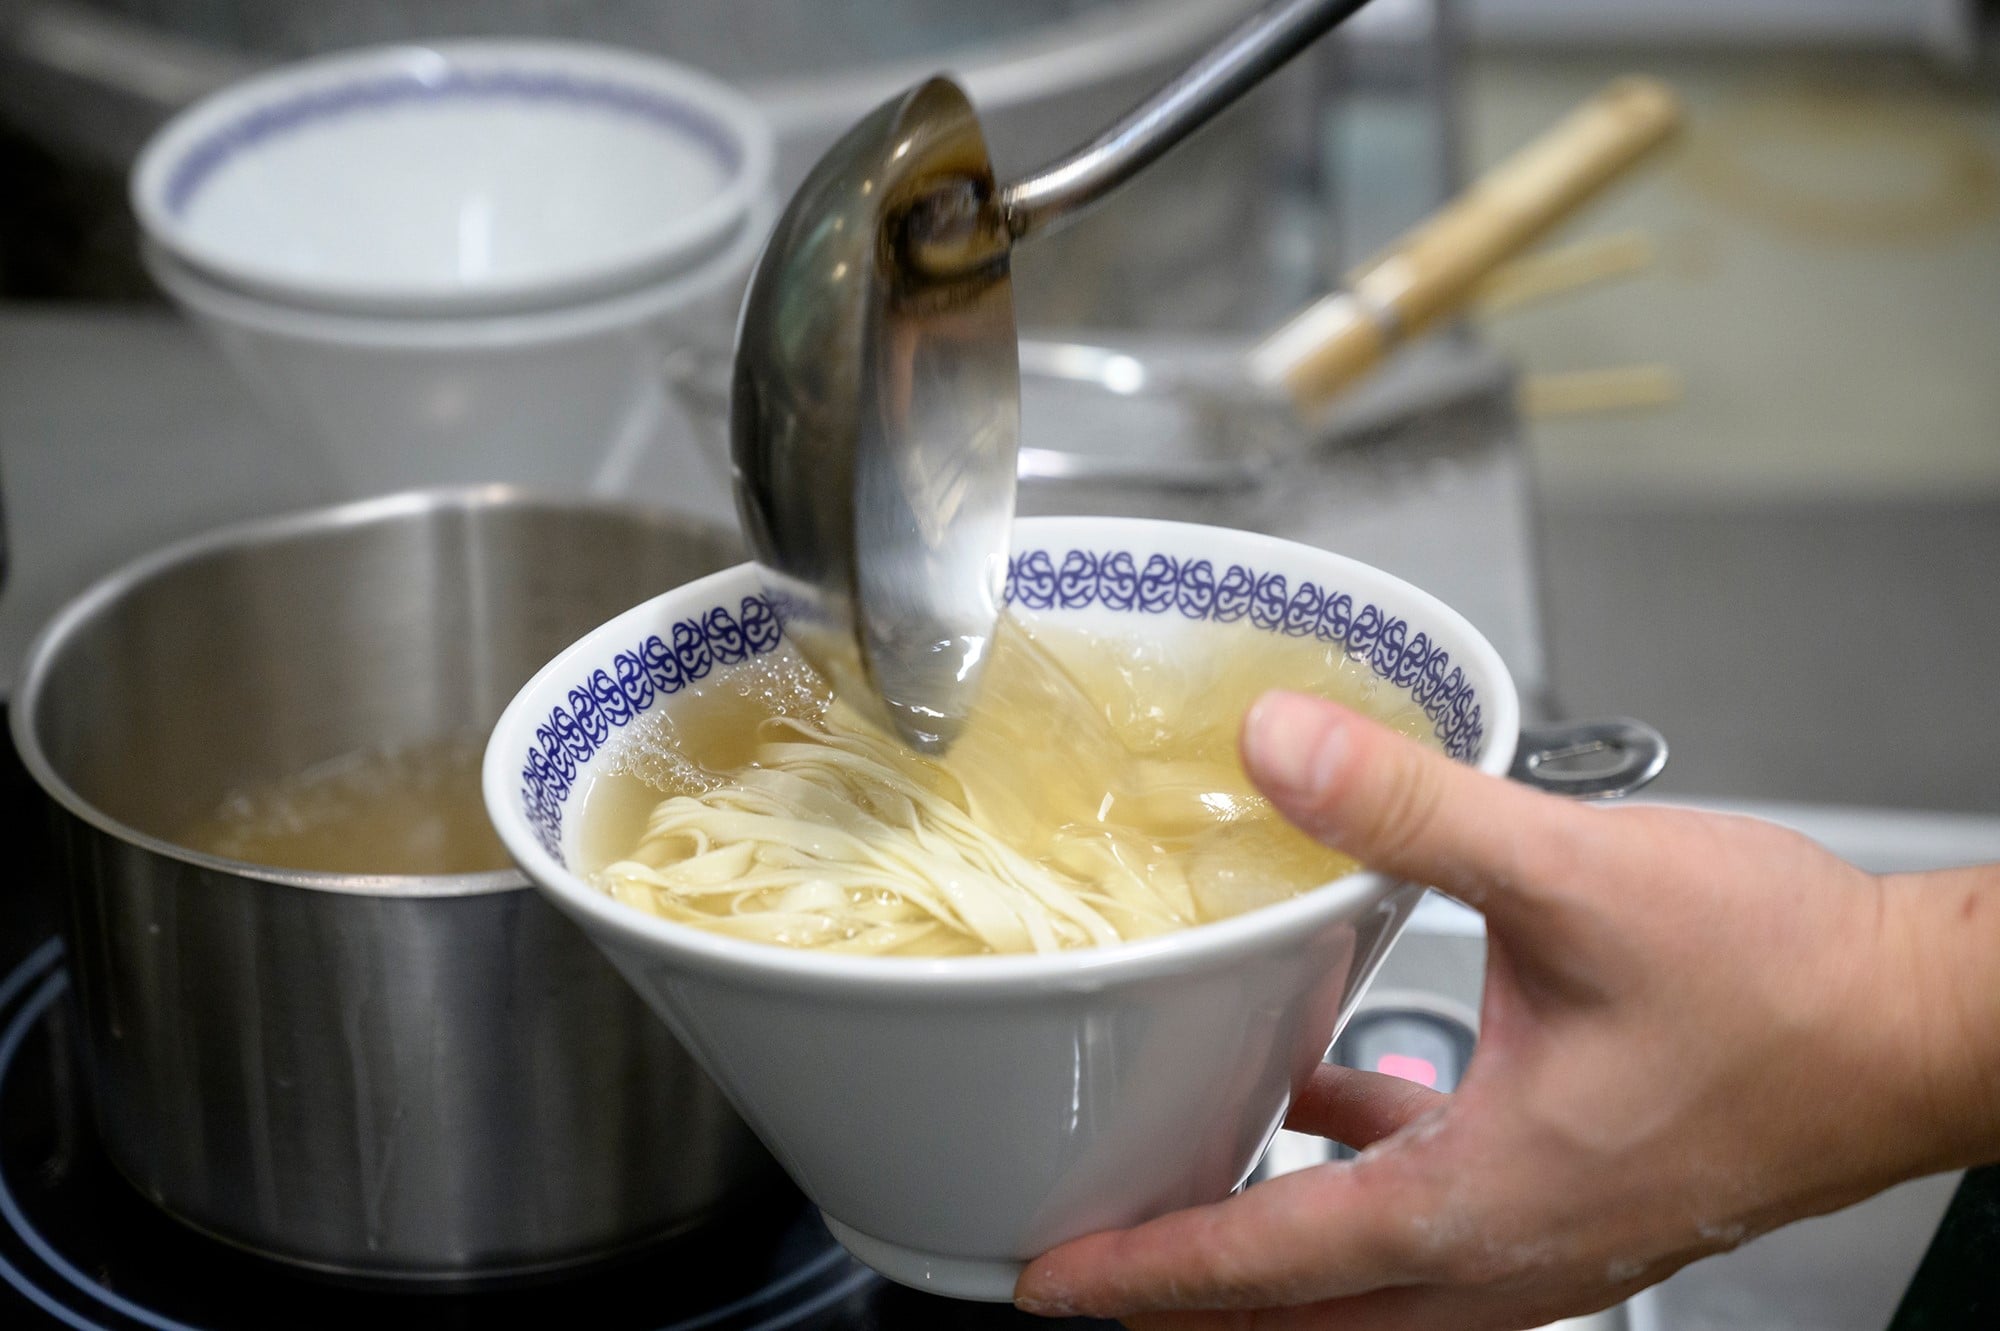 牛骨と肉を煮込んで作るスープは想像以上に澄んでいて濁りがない。